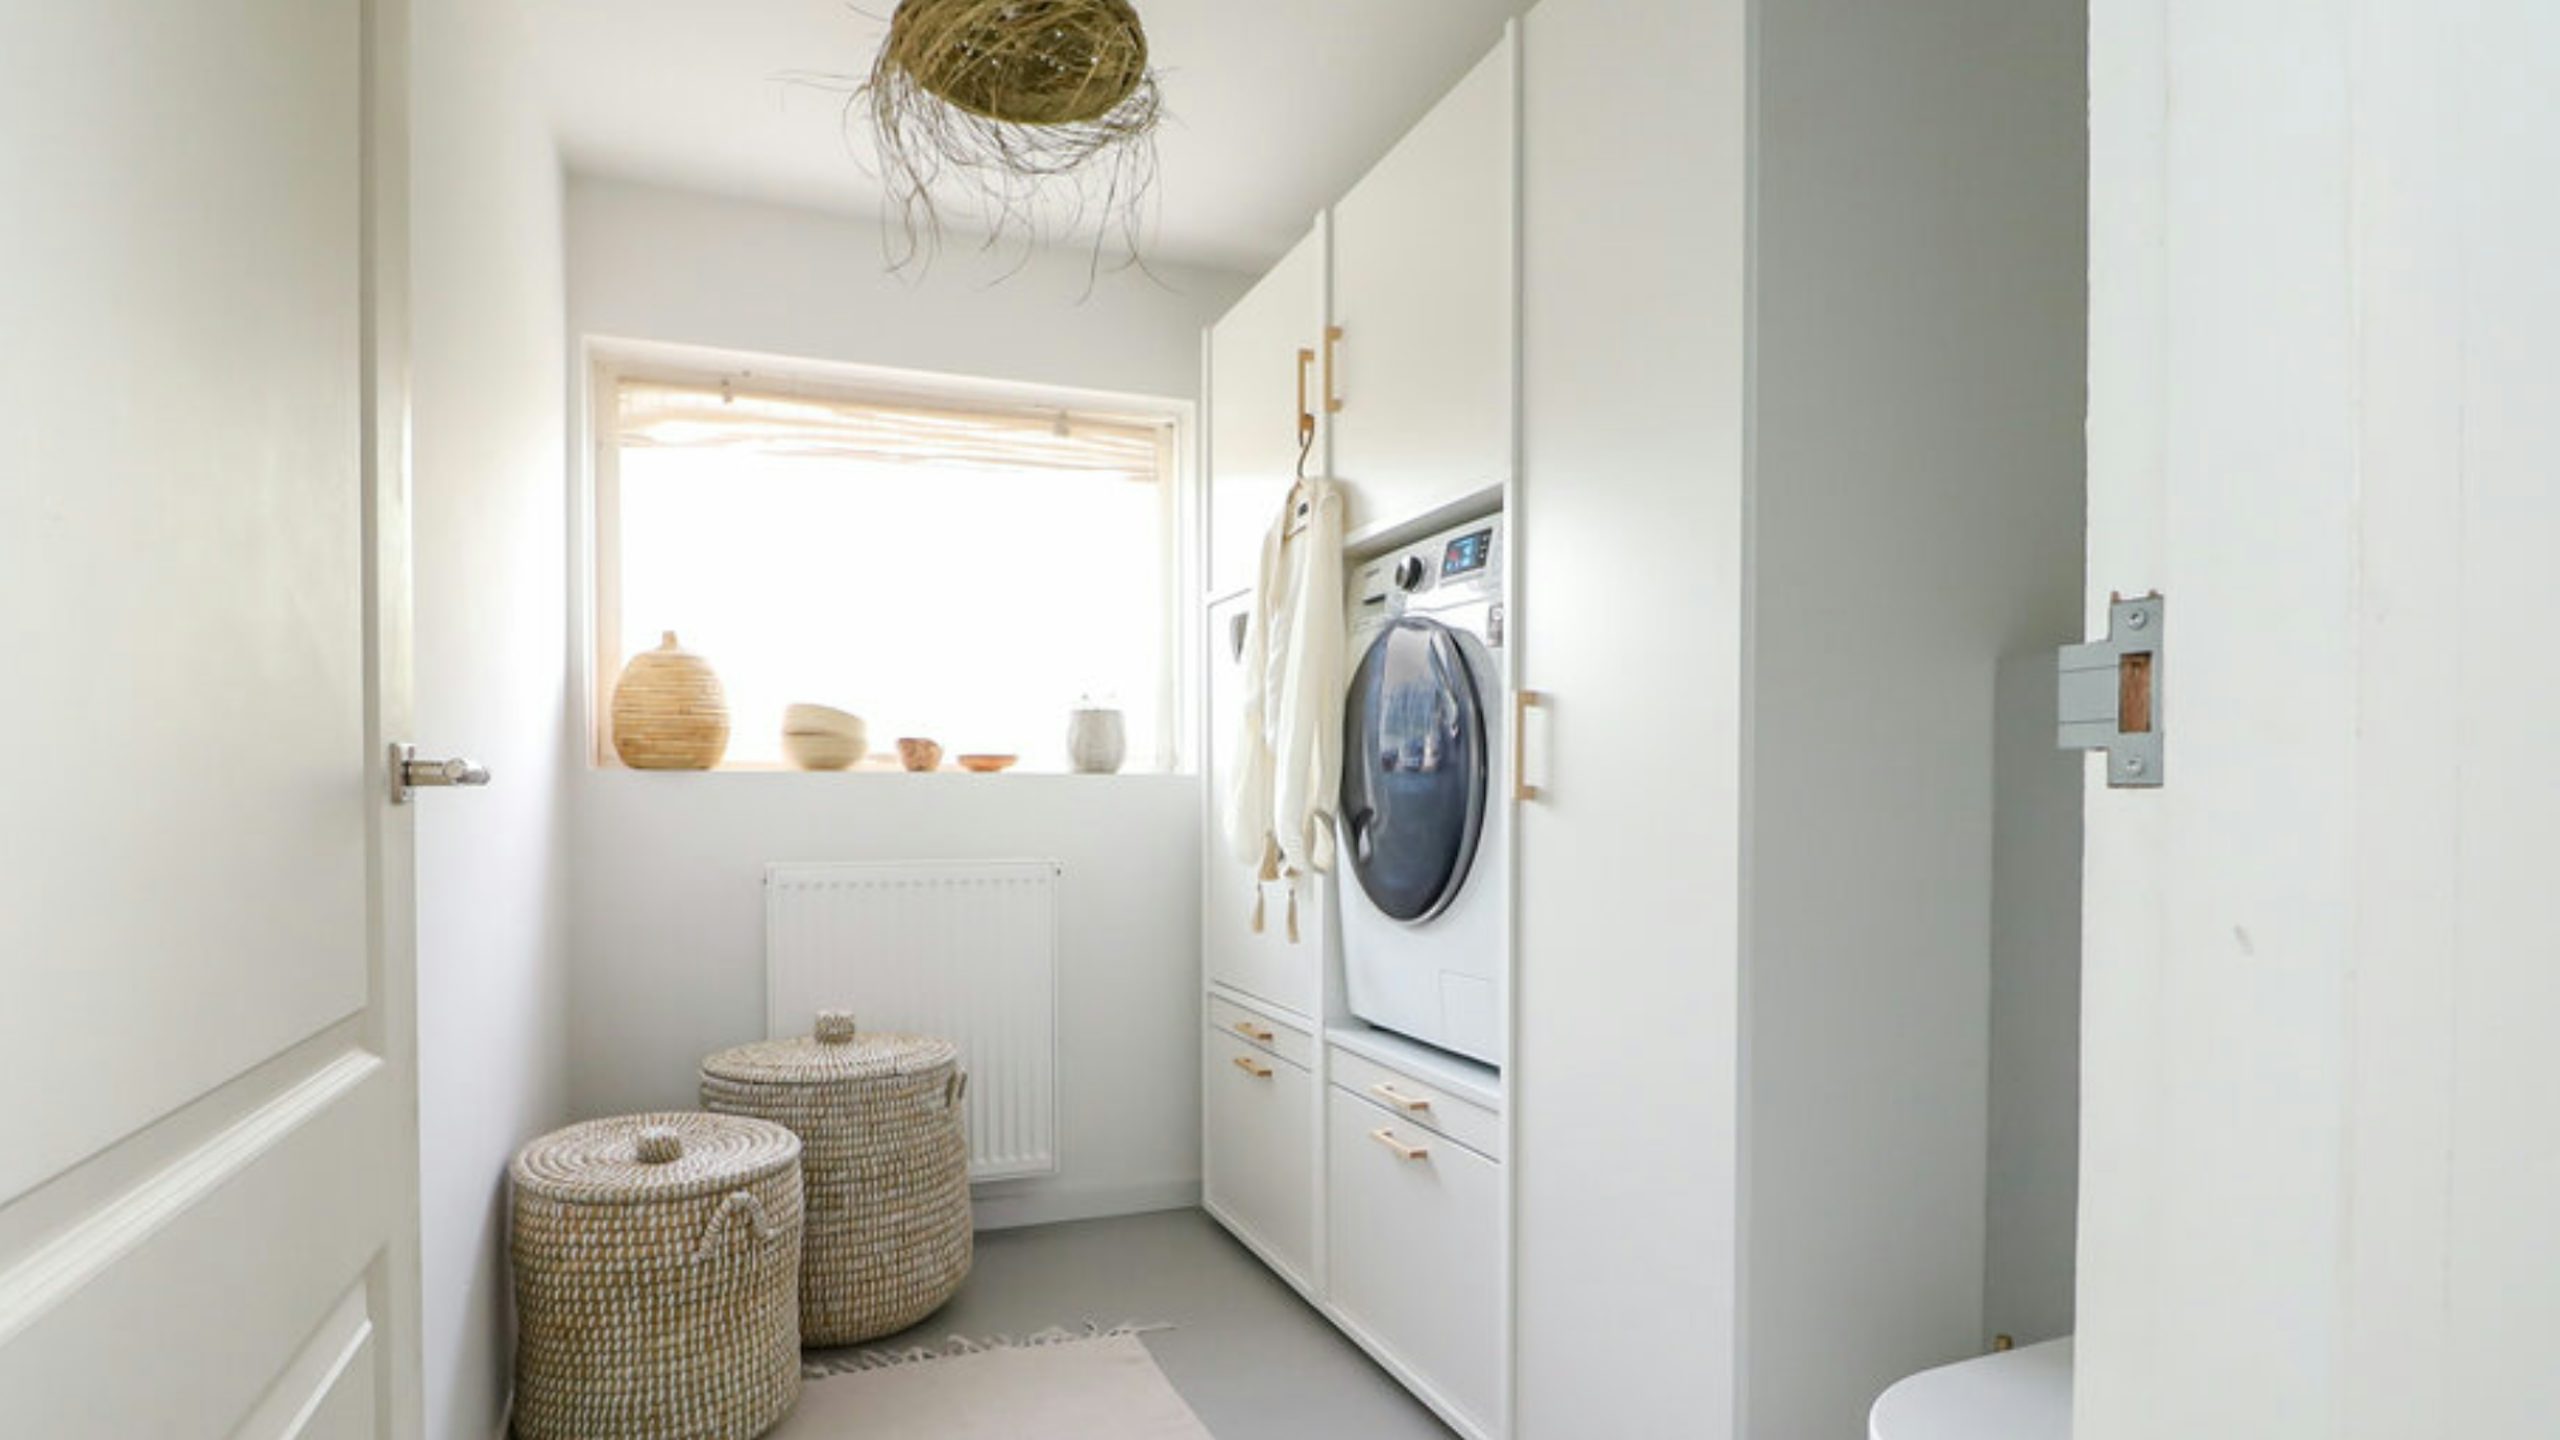 Wasmachine en droger hoger geplaatst doormiddel van stevige wasmachine kast met opbergruimte, uittrekbare plank voor de wasmand en onderkasten